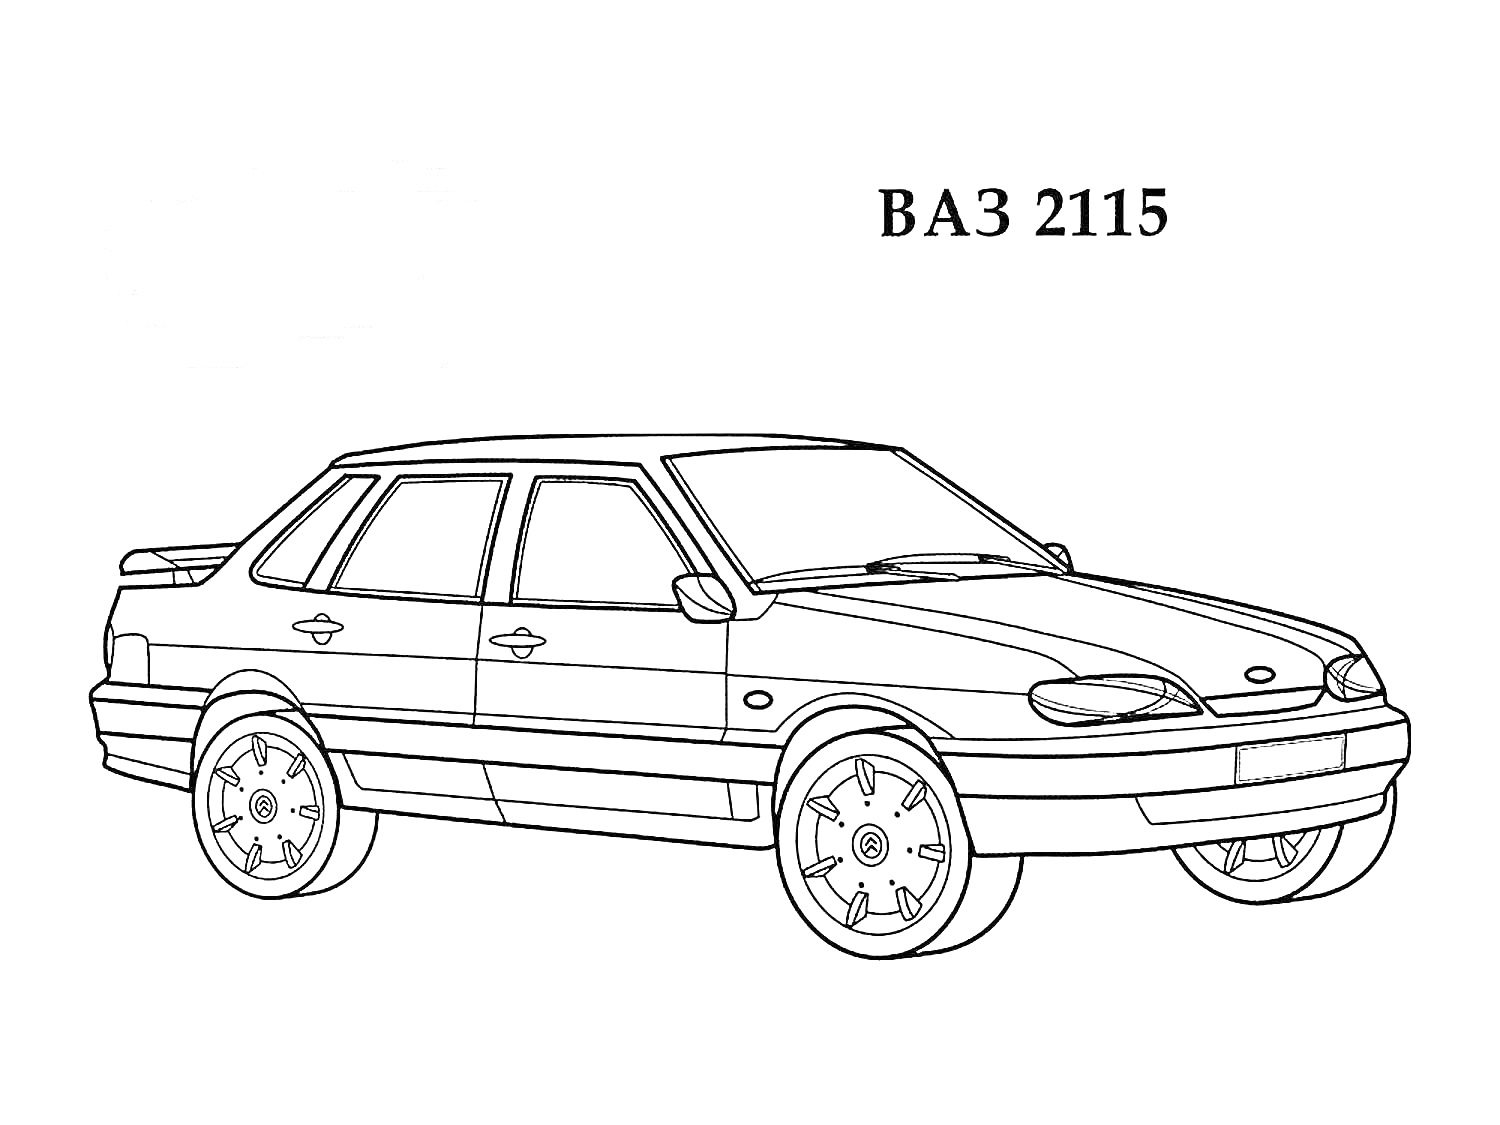 Раскраска ВАЗ 2115, автомобиль в виде раскраски